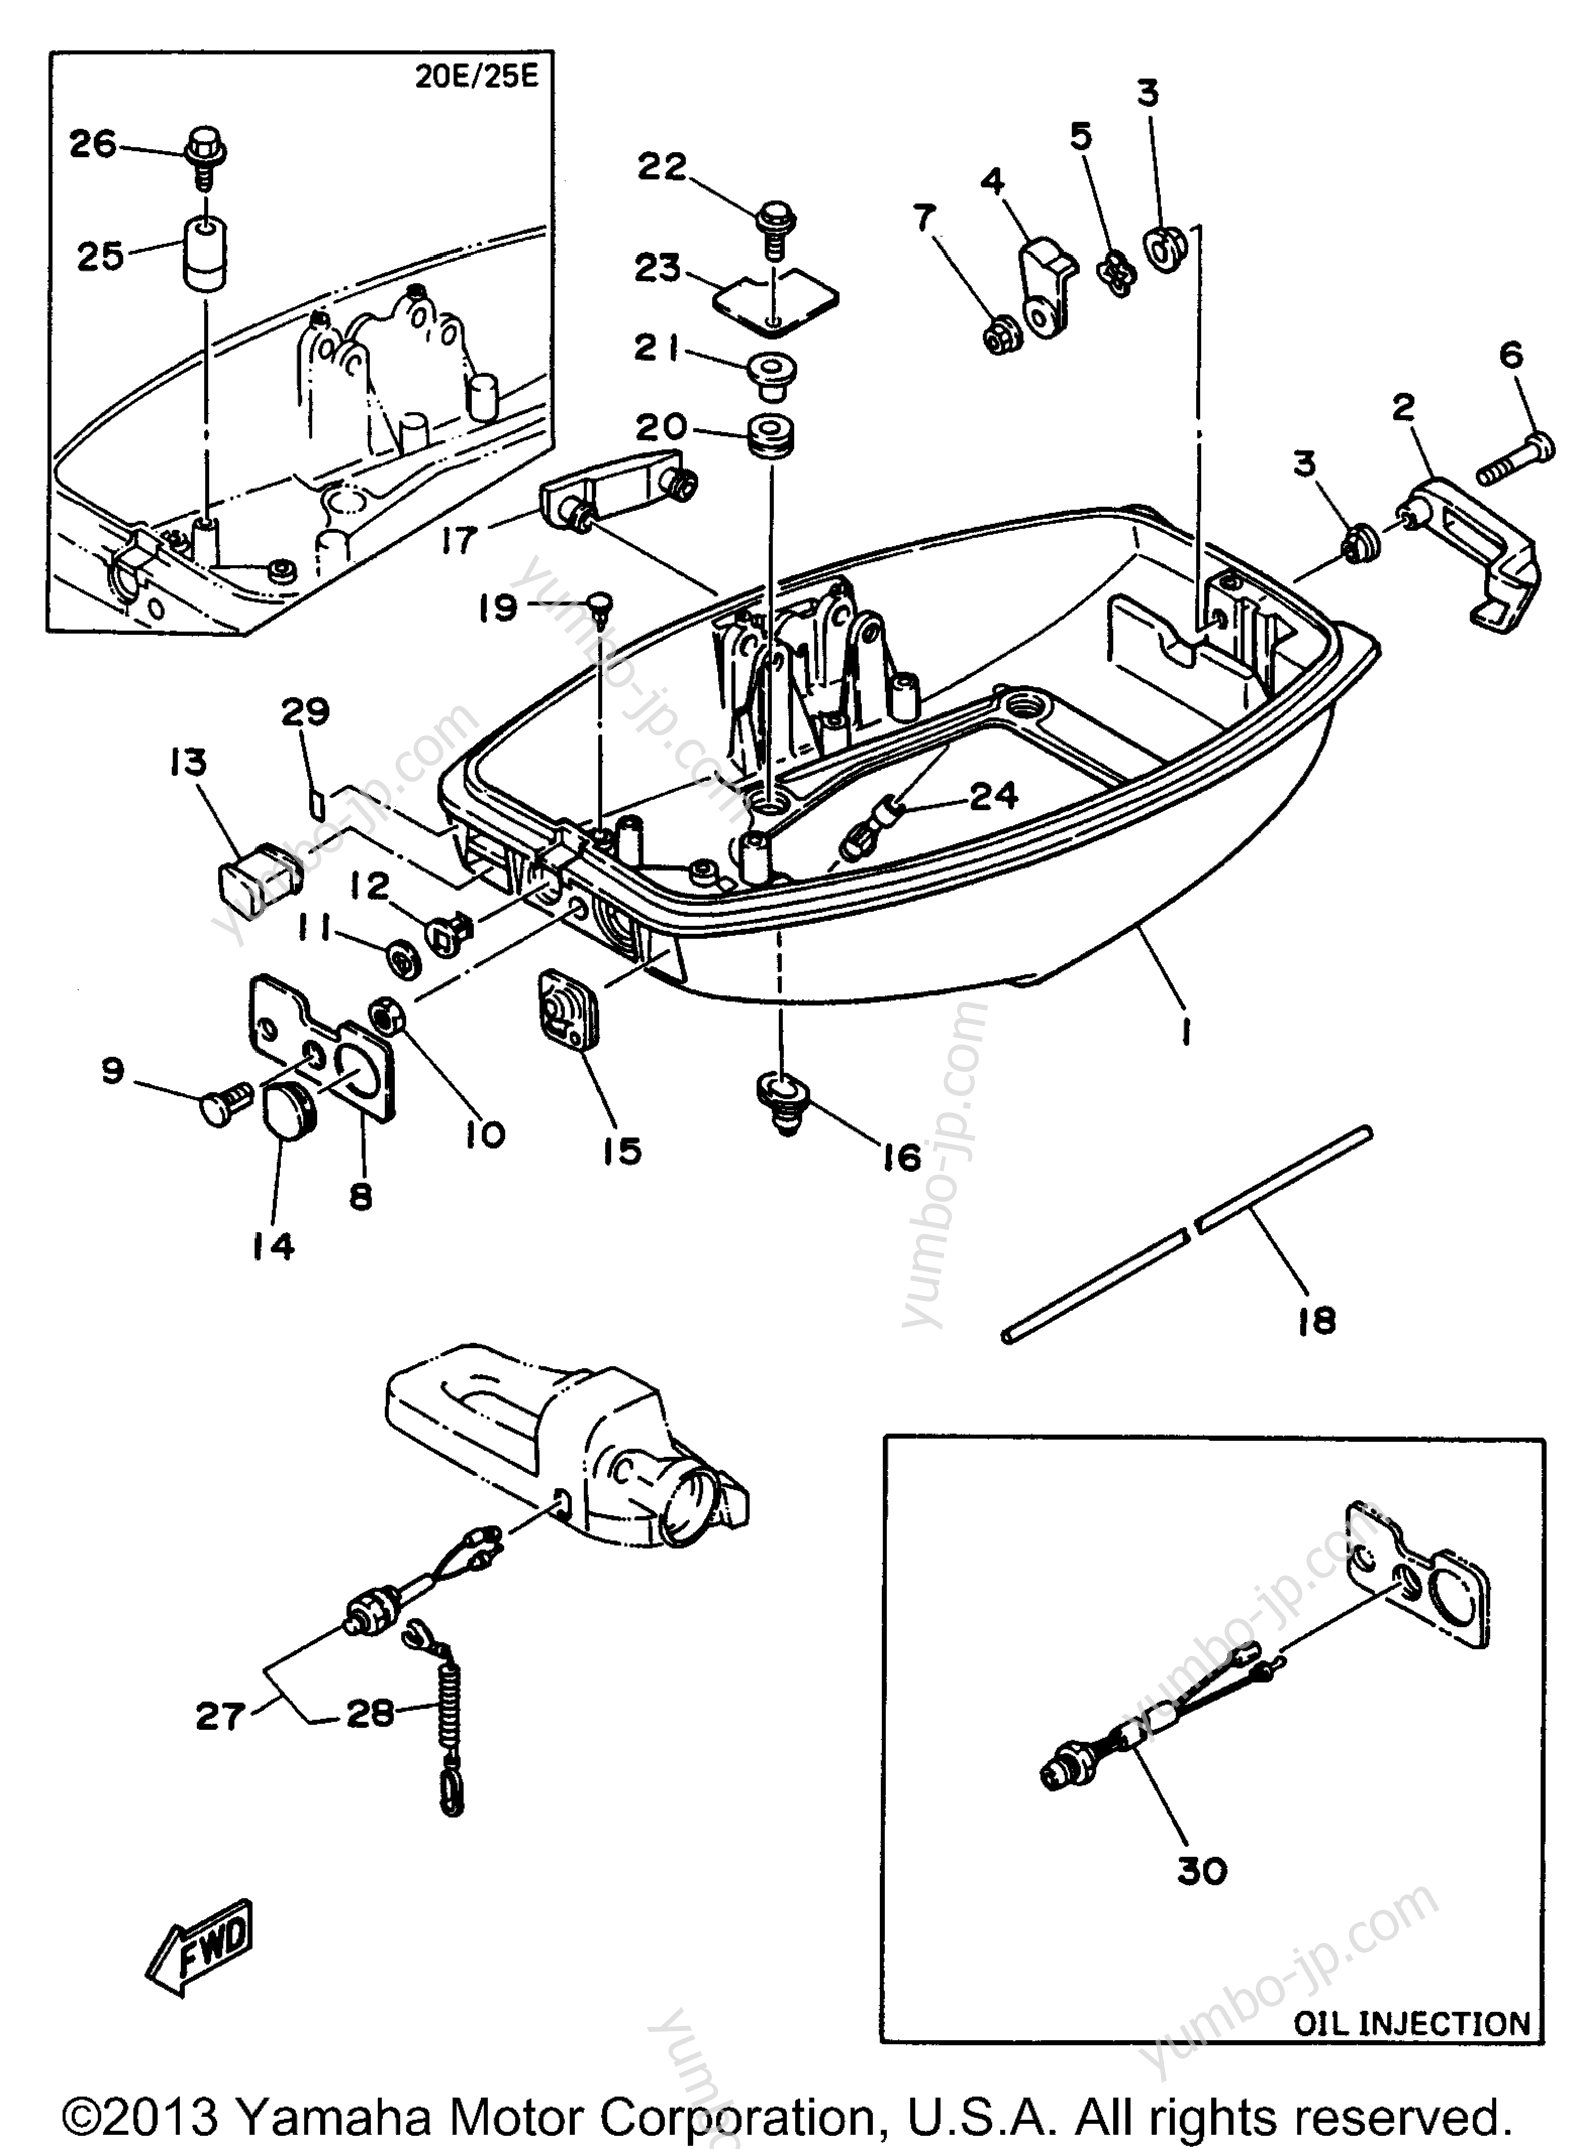 Bottom Cowling для лодочных моторов YAMAHA 25MSHU2 1996 г.